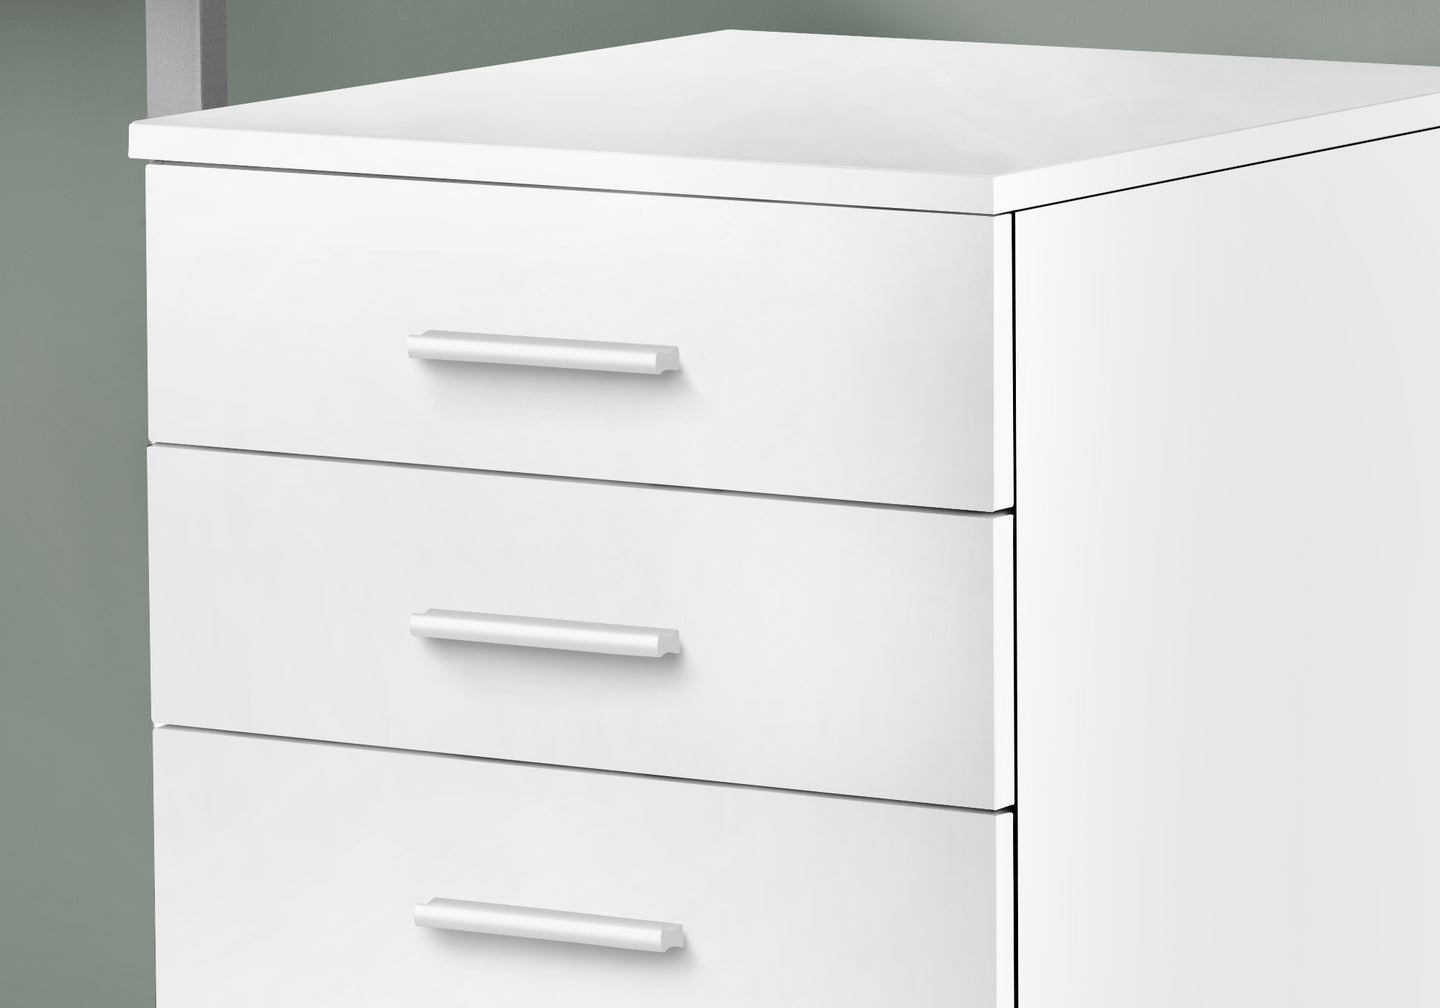 I 7780 Filing Cabinet - 3 Drawer / White On Castors - Furniture Depot